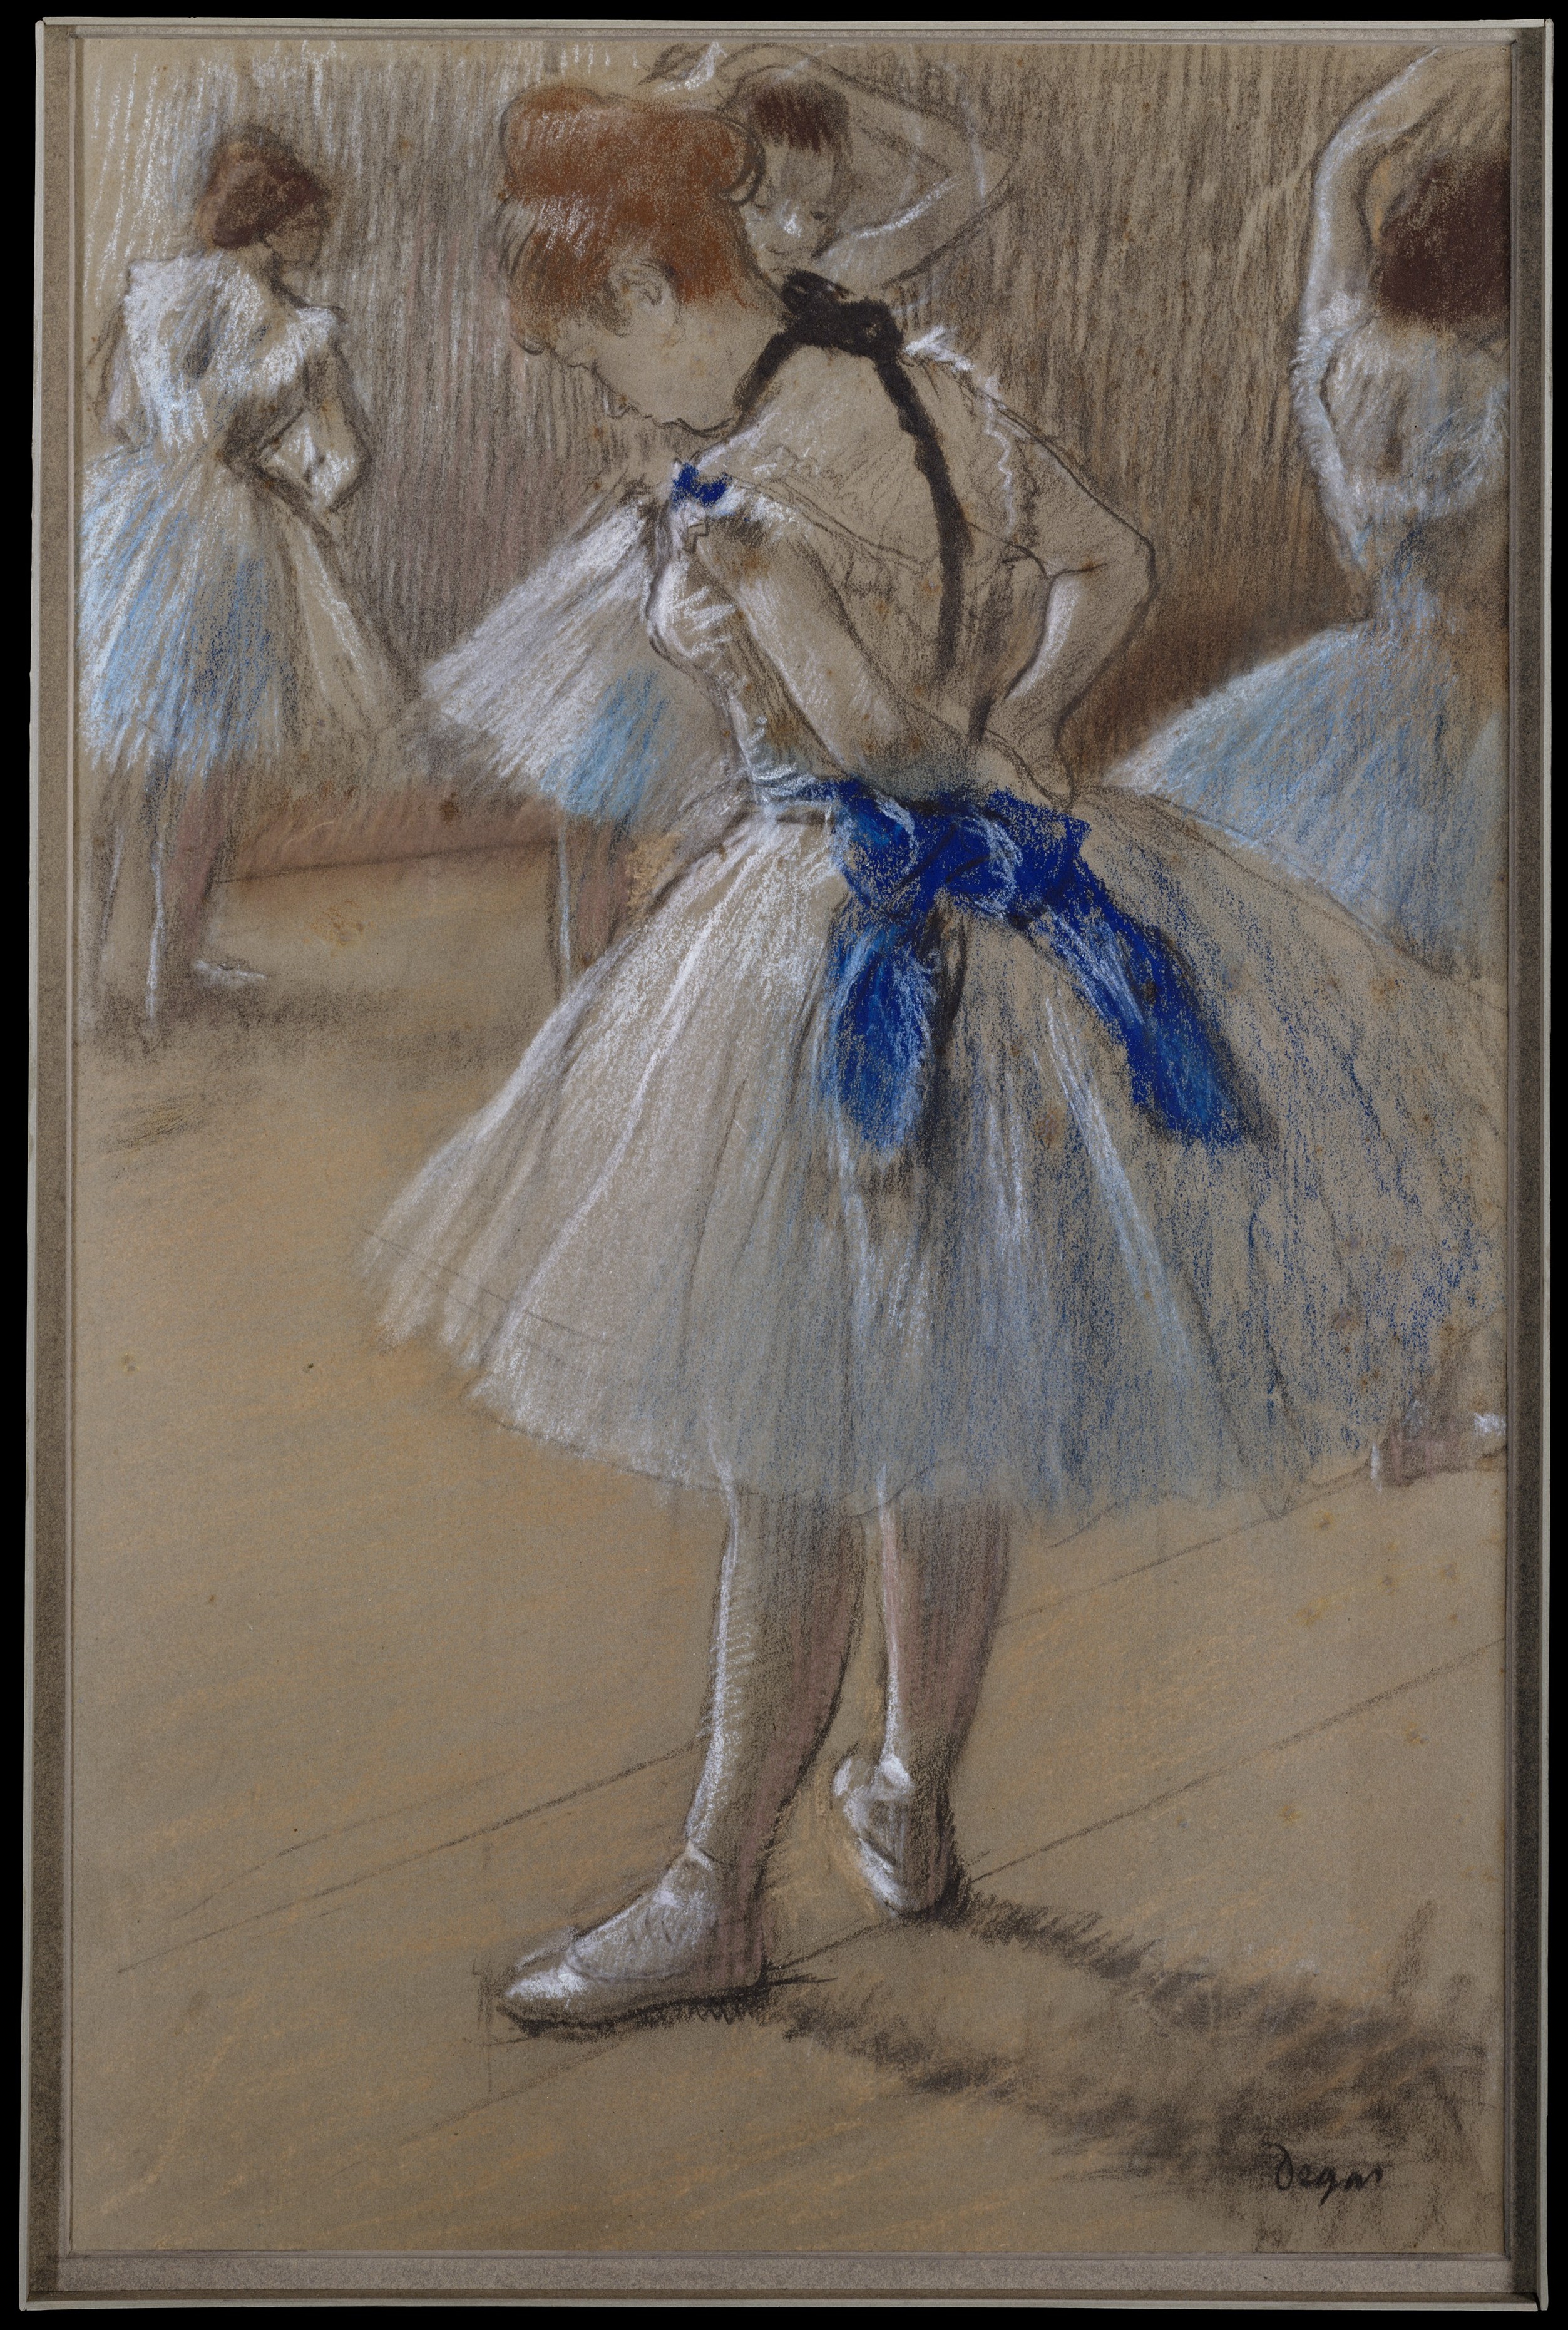 Edgar Degas Dancer The Metropolitan Museum of Art